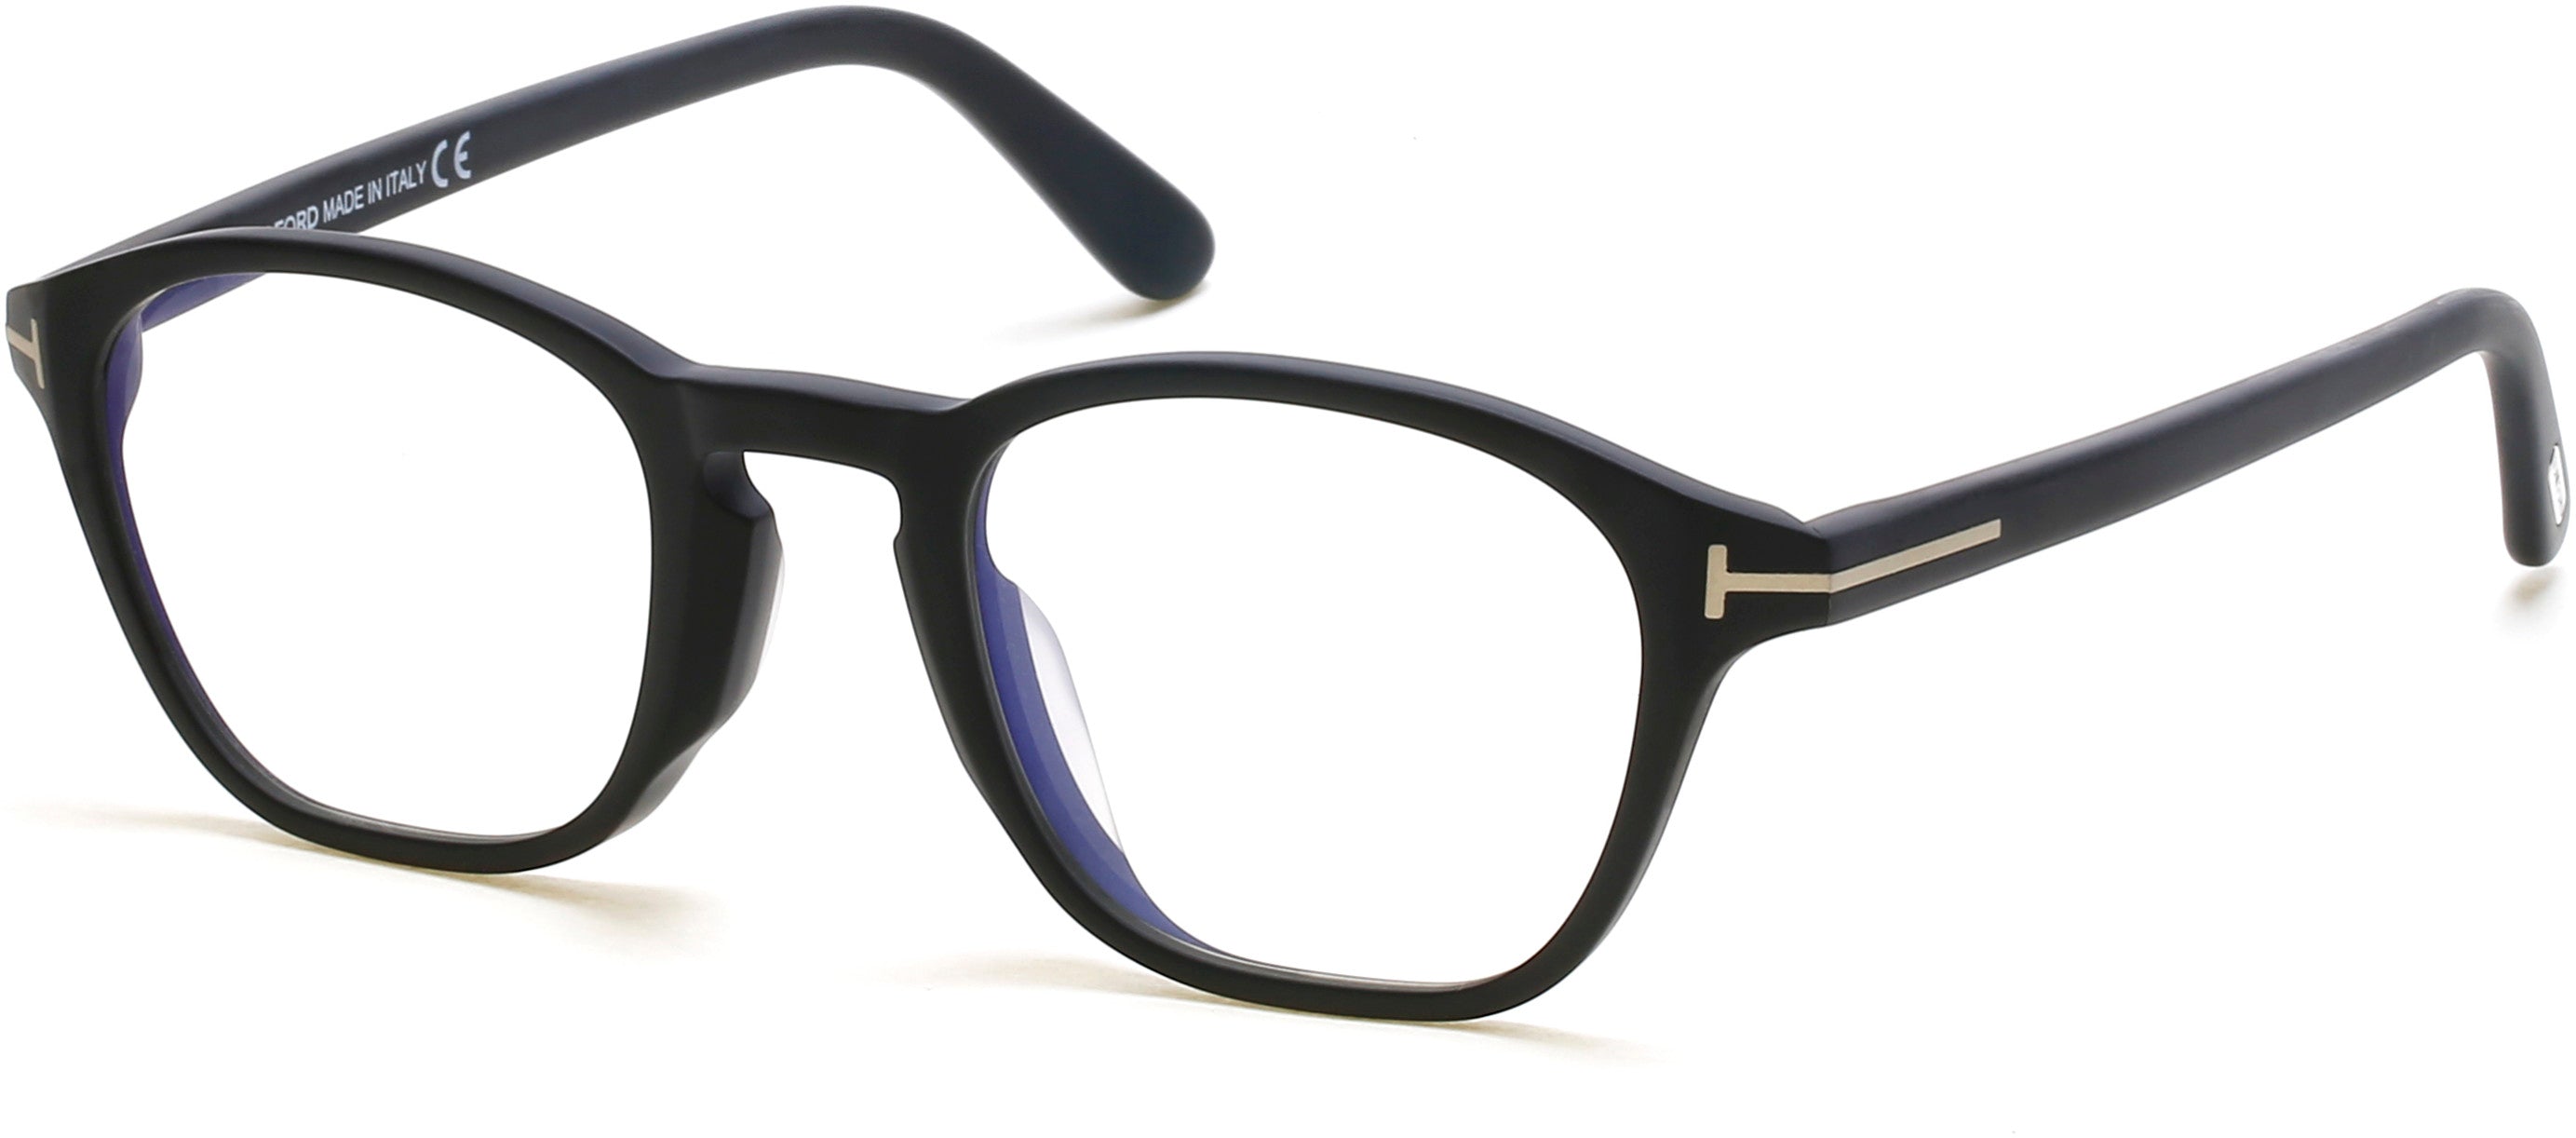 Tom Ford FT5591-D-B Geometric Eyeglasses 002-002 - Matte Black, Rose Gold "t" Logo/ Blue Block Lenses